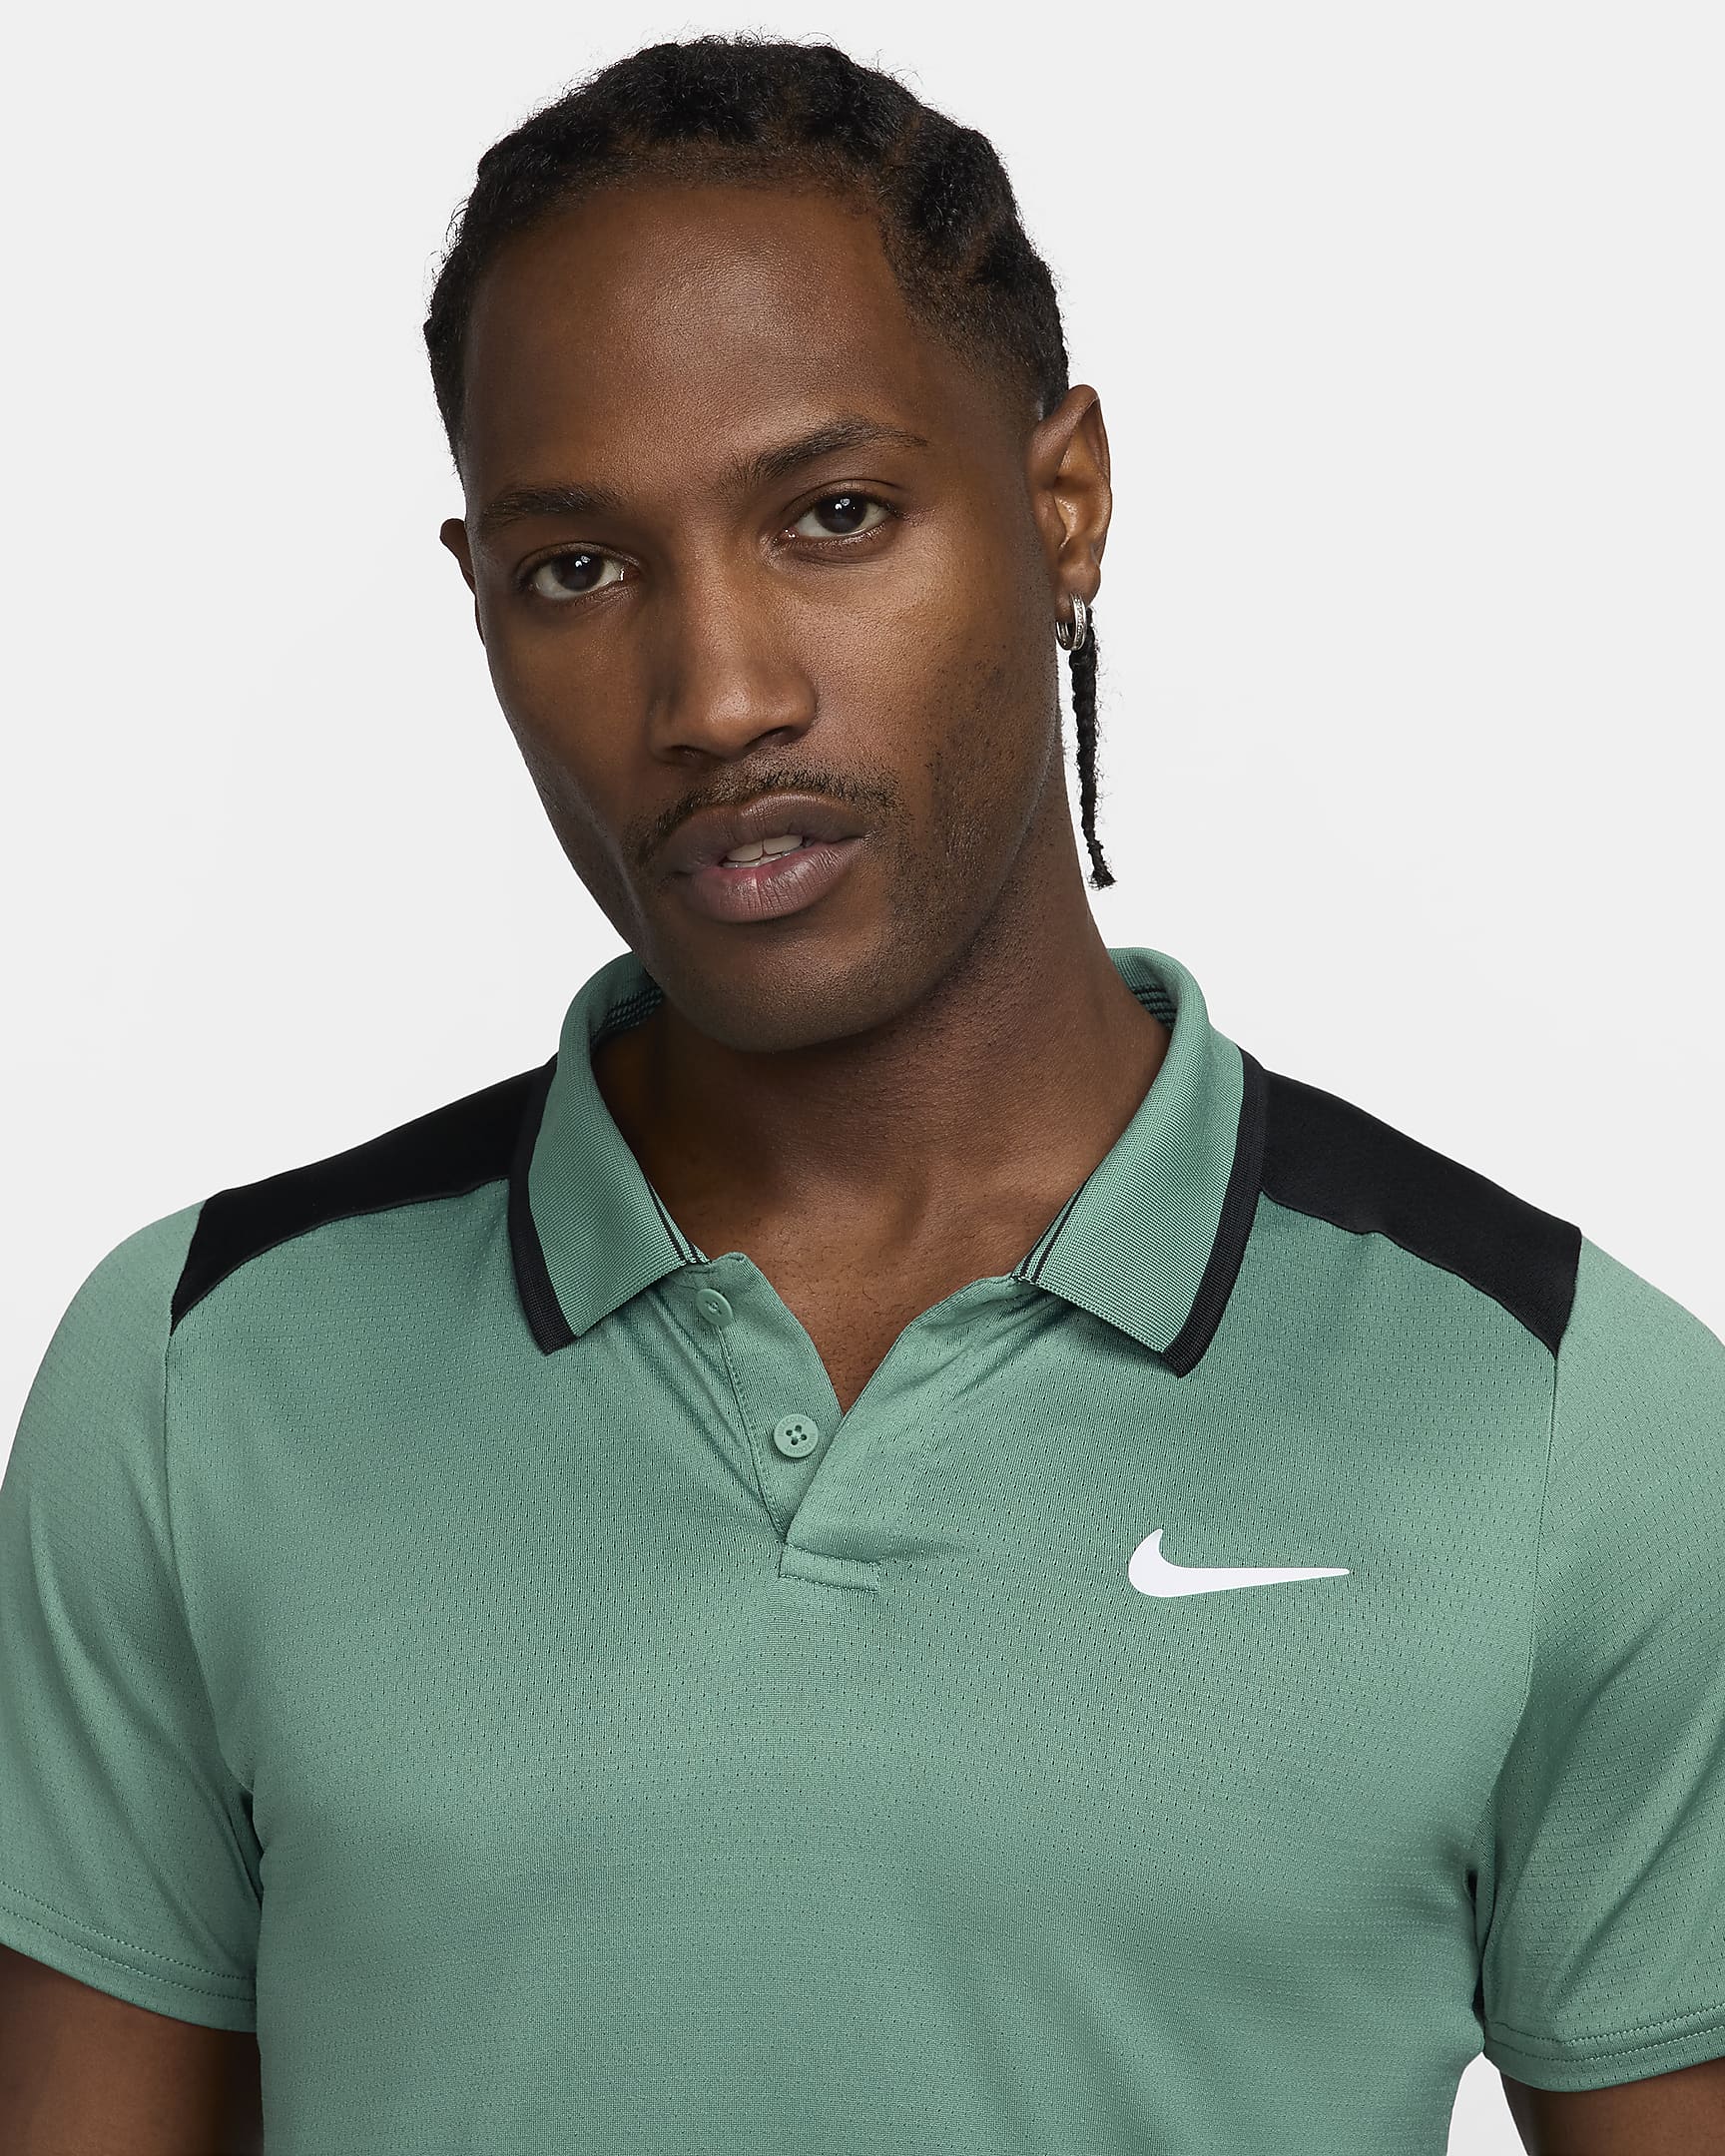 NikeCourt Advantage Men's Tennis Polo - Bicoastal/Black/White